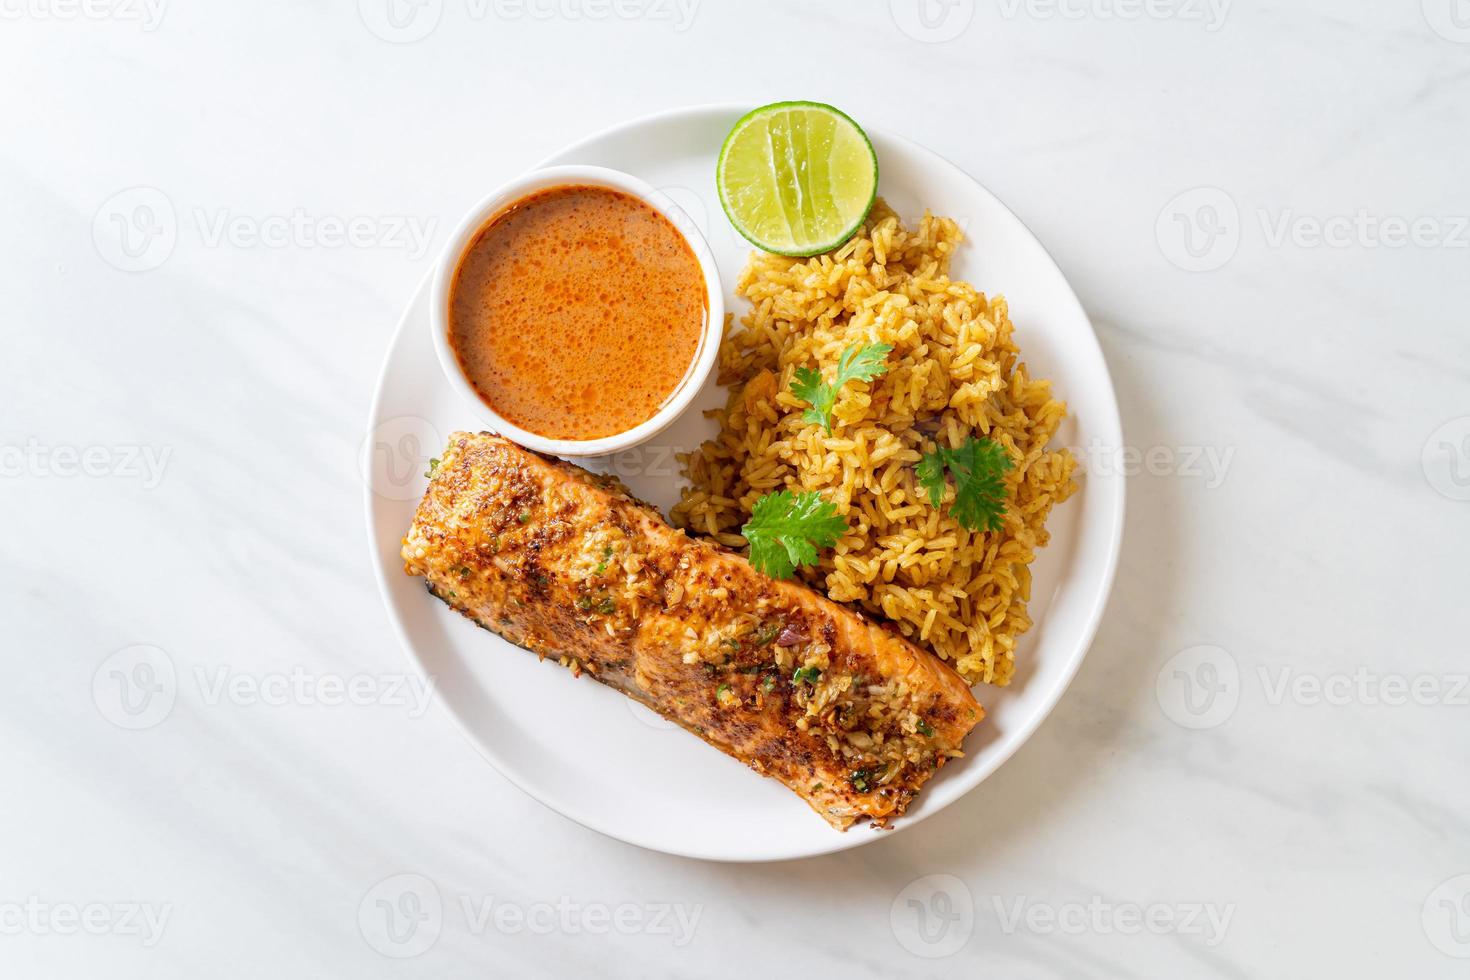 Pan-seared salmon tandoori with masala rice - Muslim food style photo